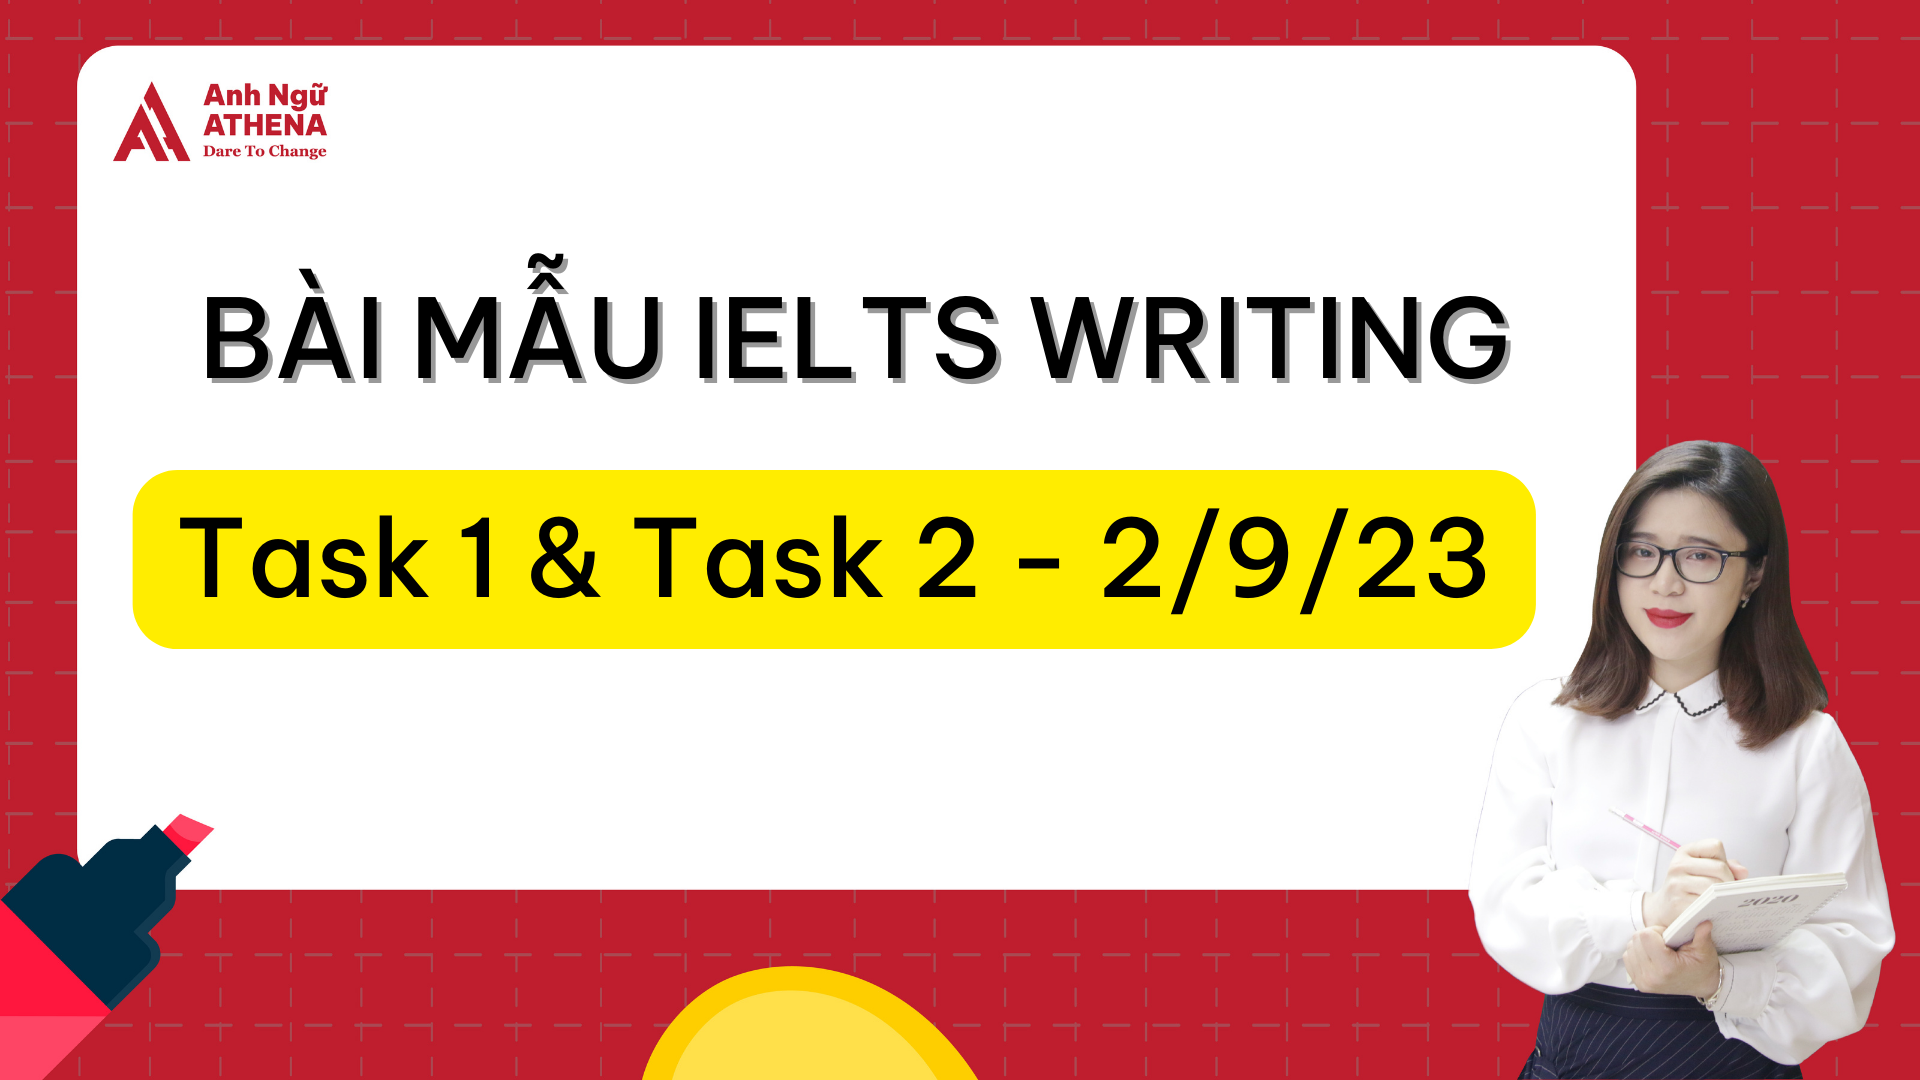 Giải FULL đề IELTS Writing kèm bài mẫu - 02/09/2023 